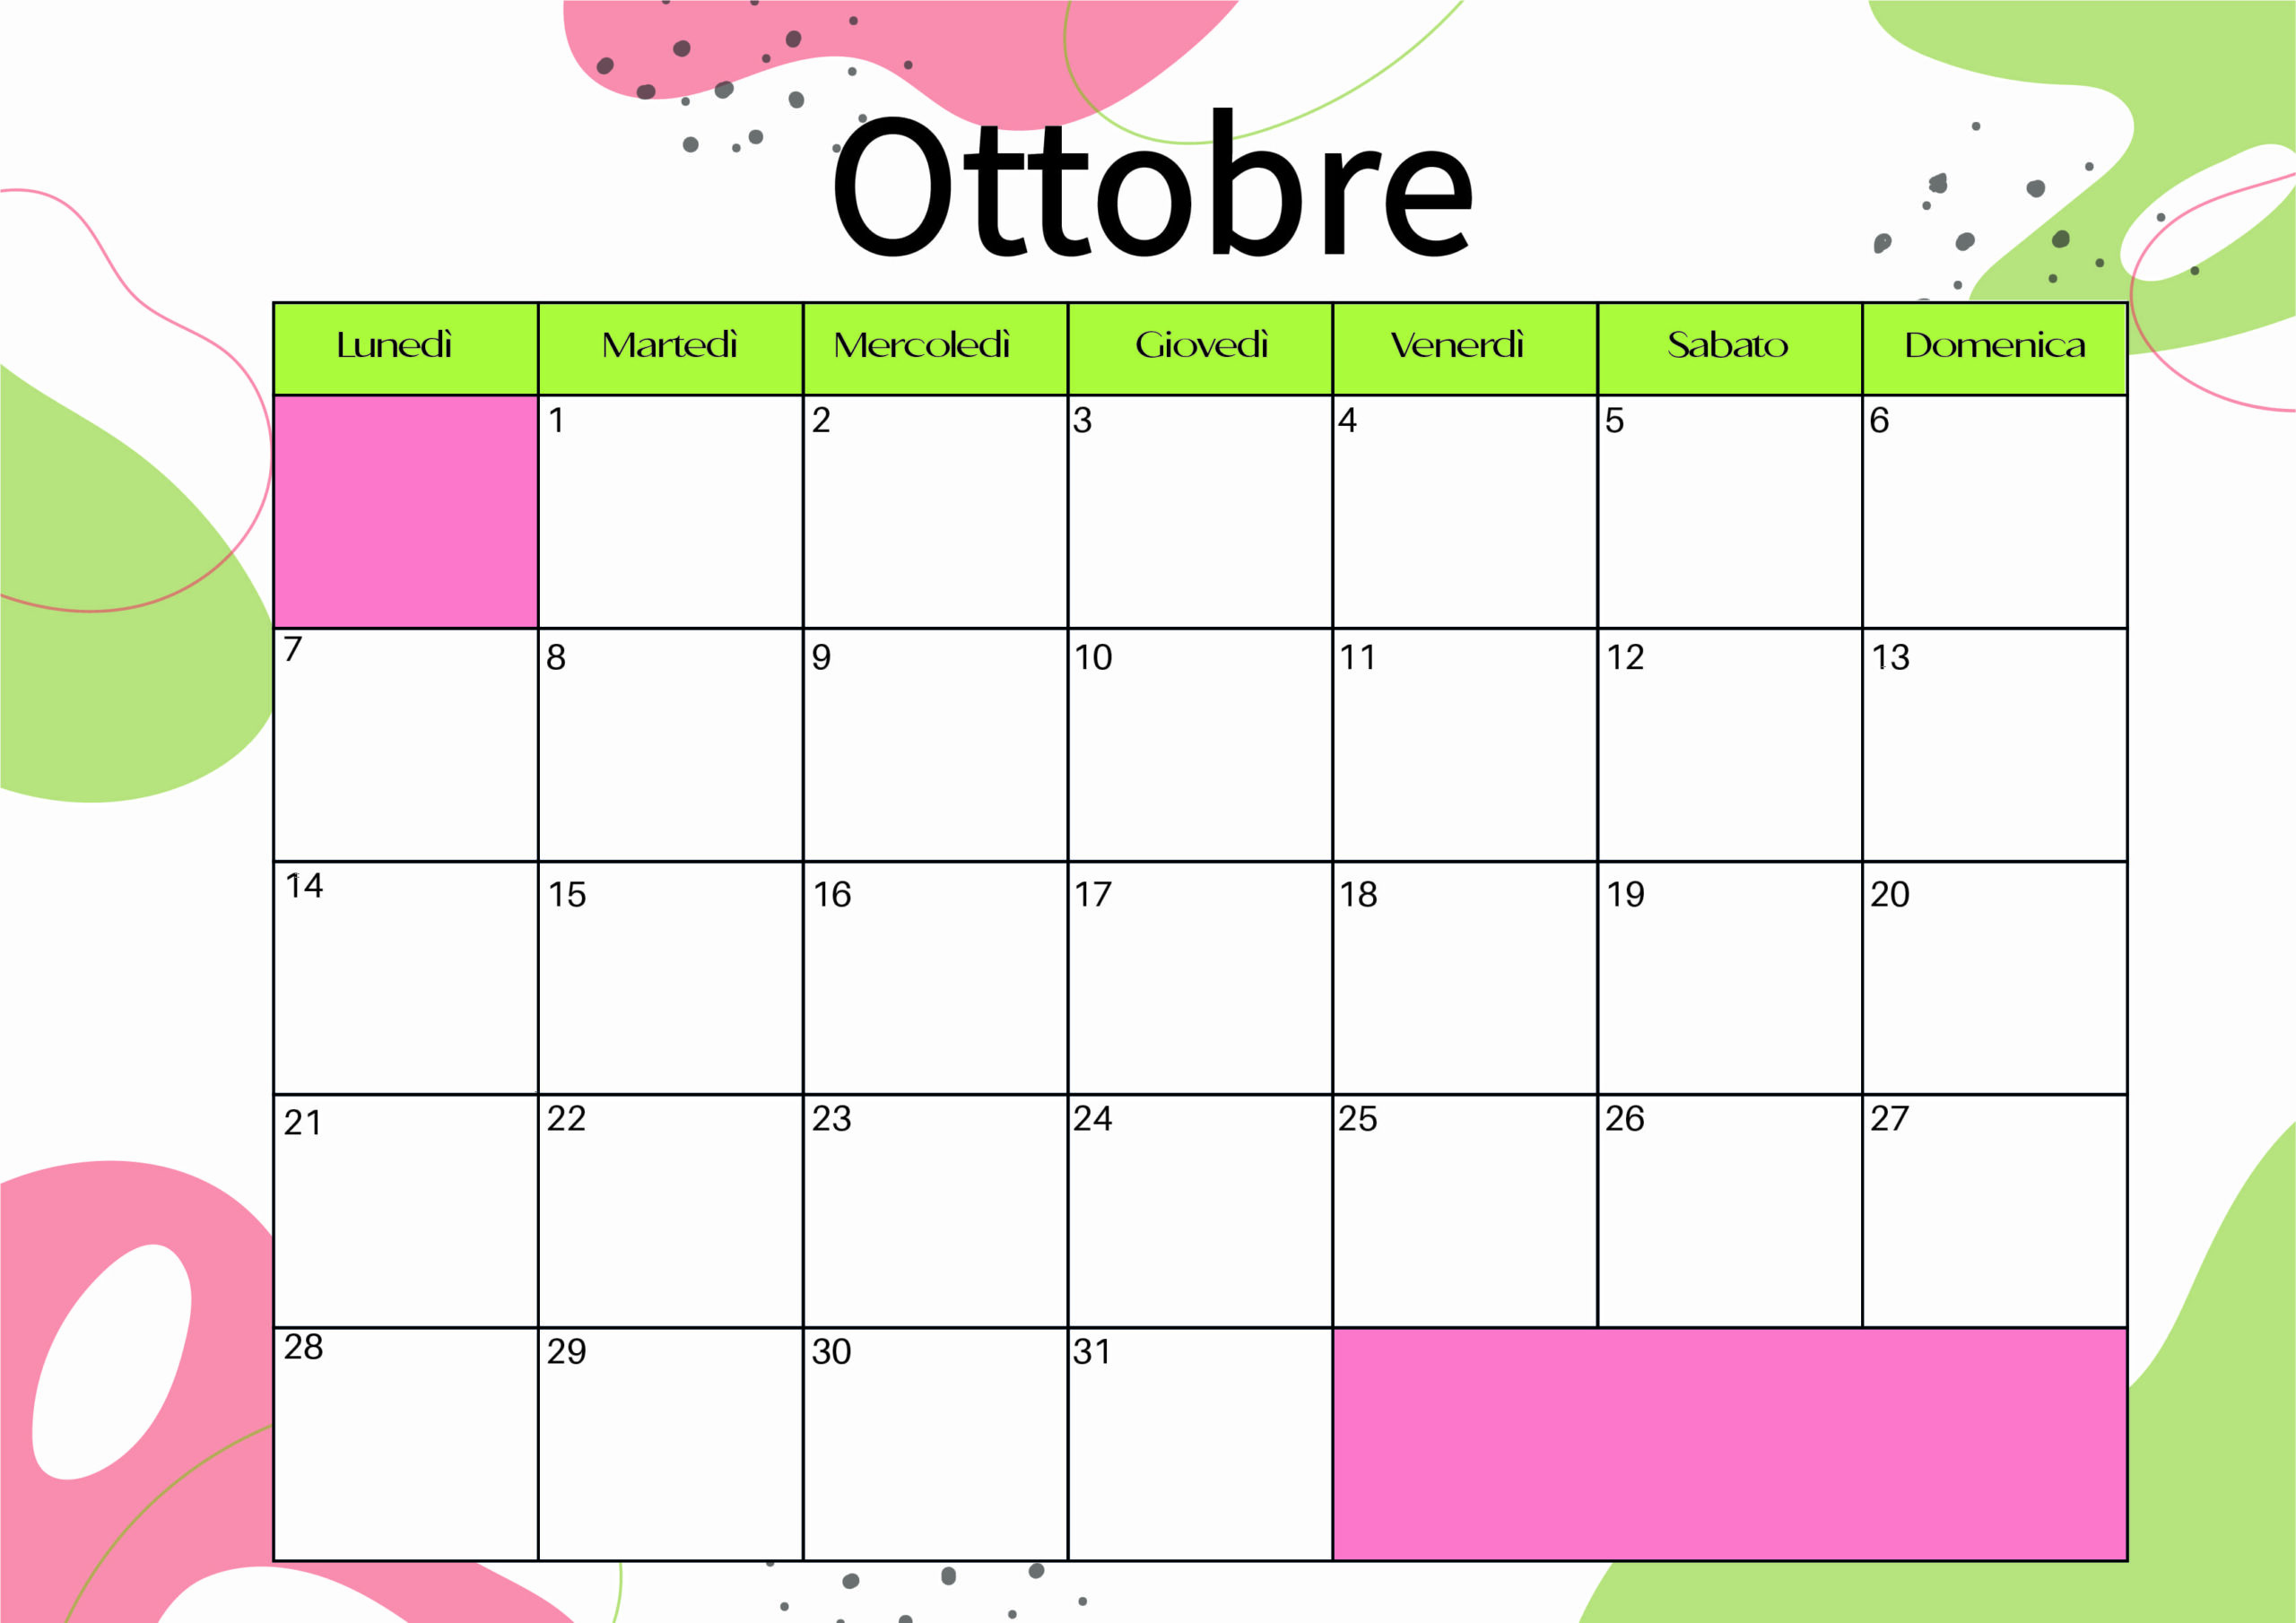 Calendario Ottobre 2024 da stampare in PDF